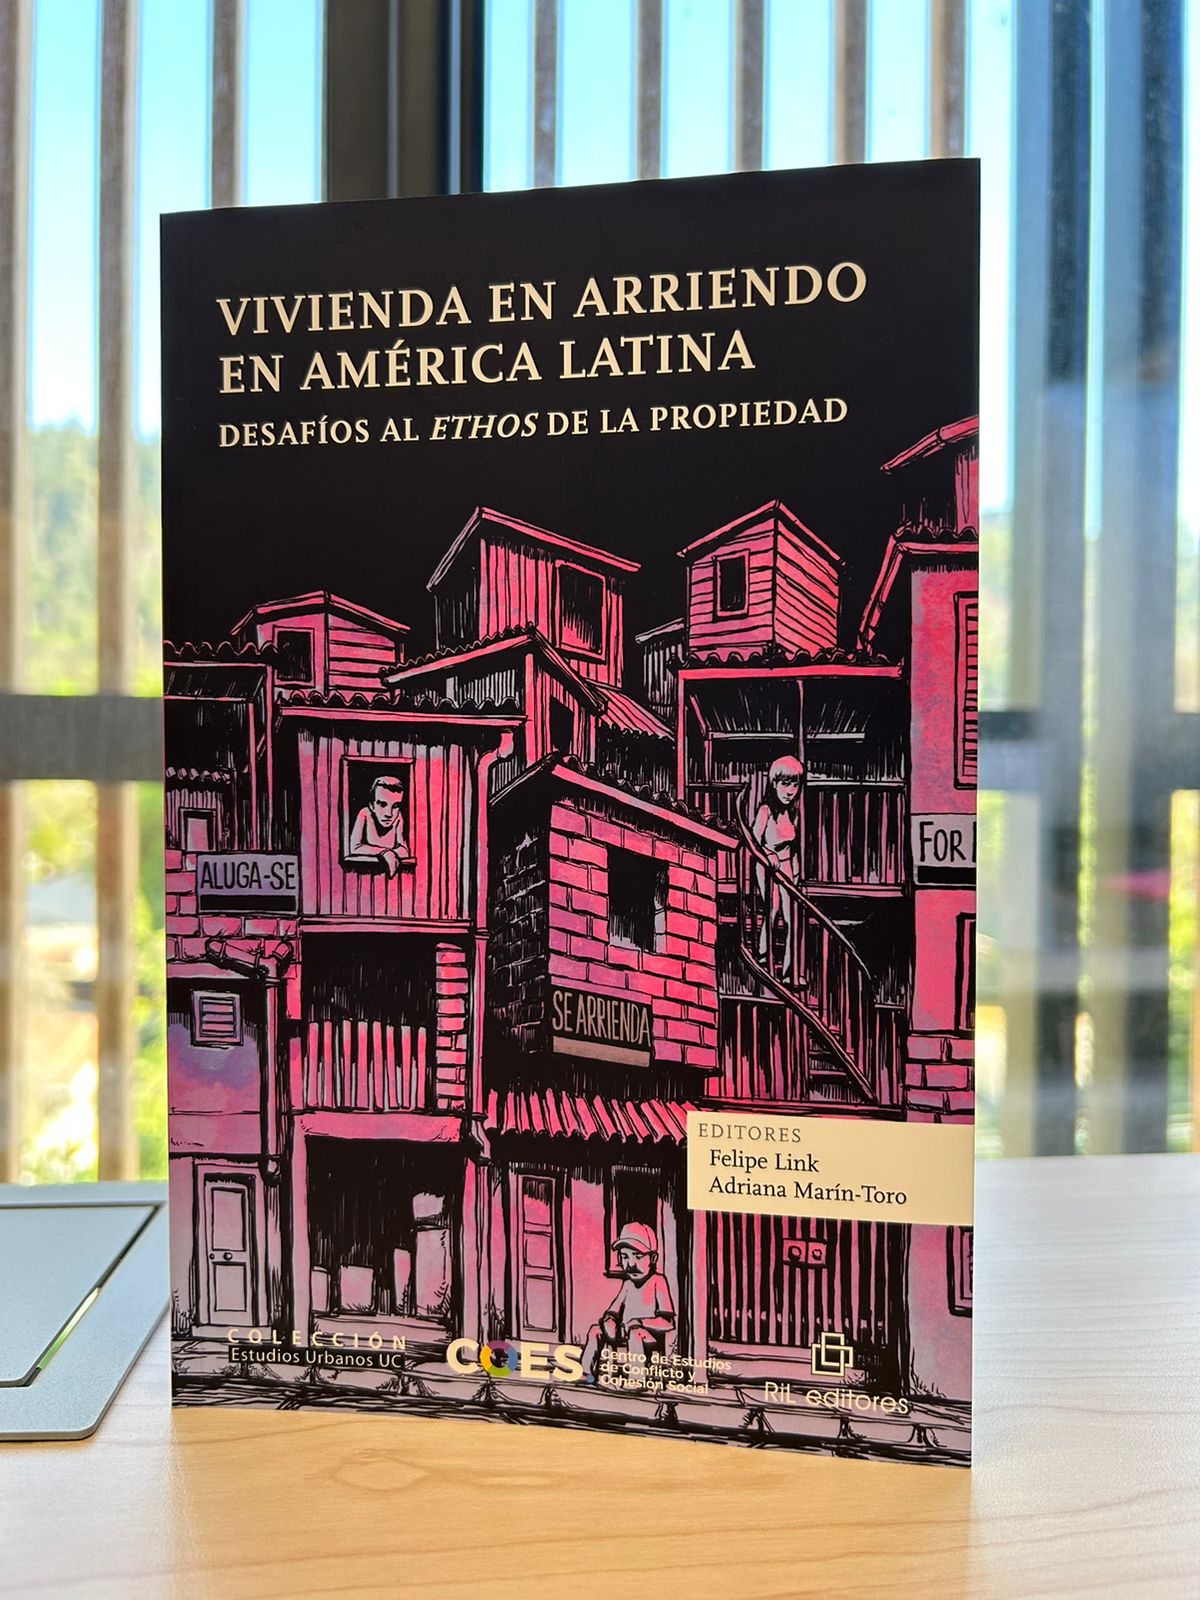 Subdirector Felipe Link lanza el libro “Vivienda en arriendo en América Latina. Desafíos al ethos de la propiedad”